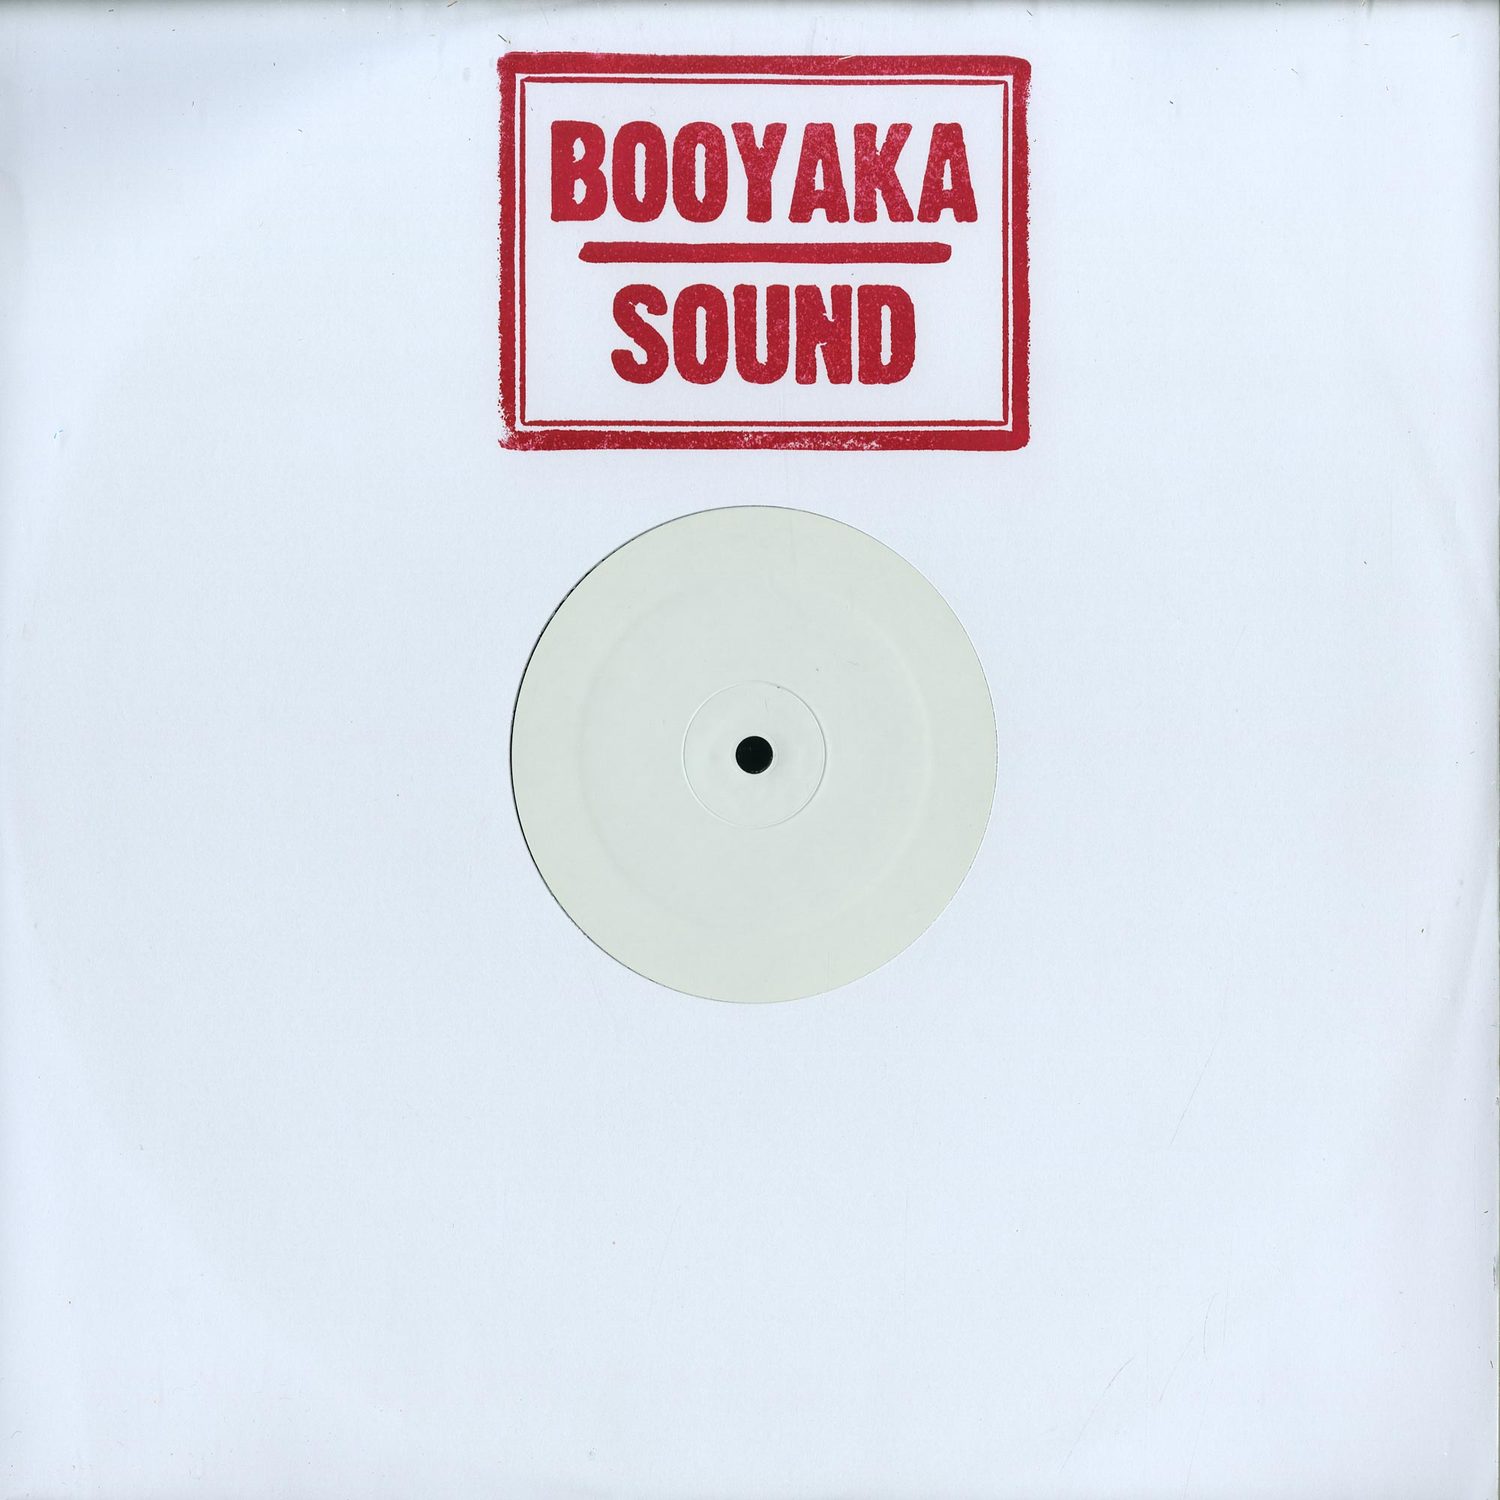 Hot - BOOYAKA SOUND 